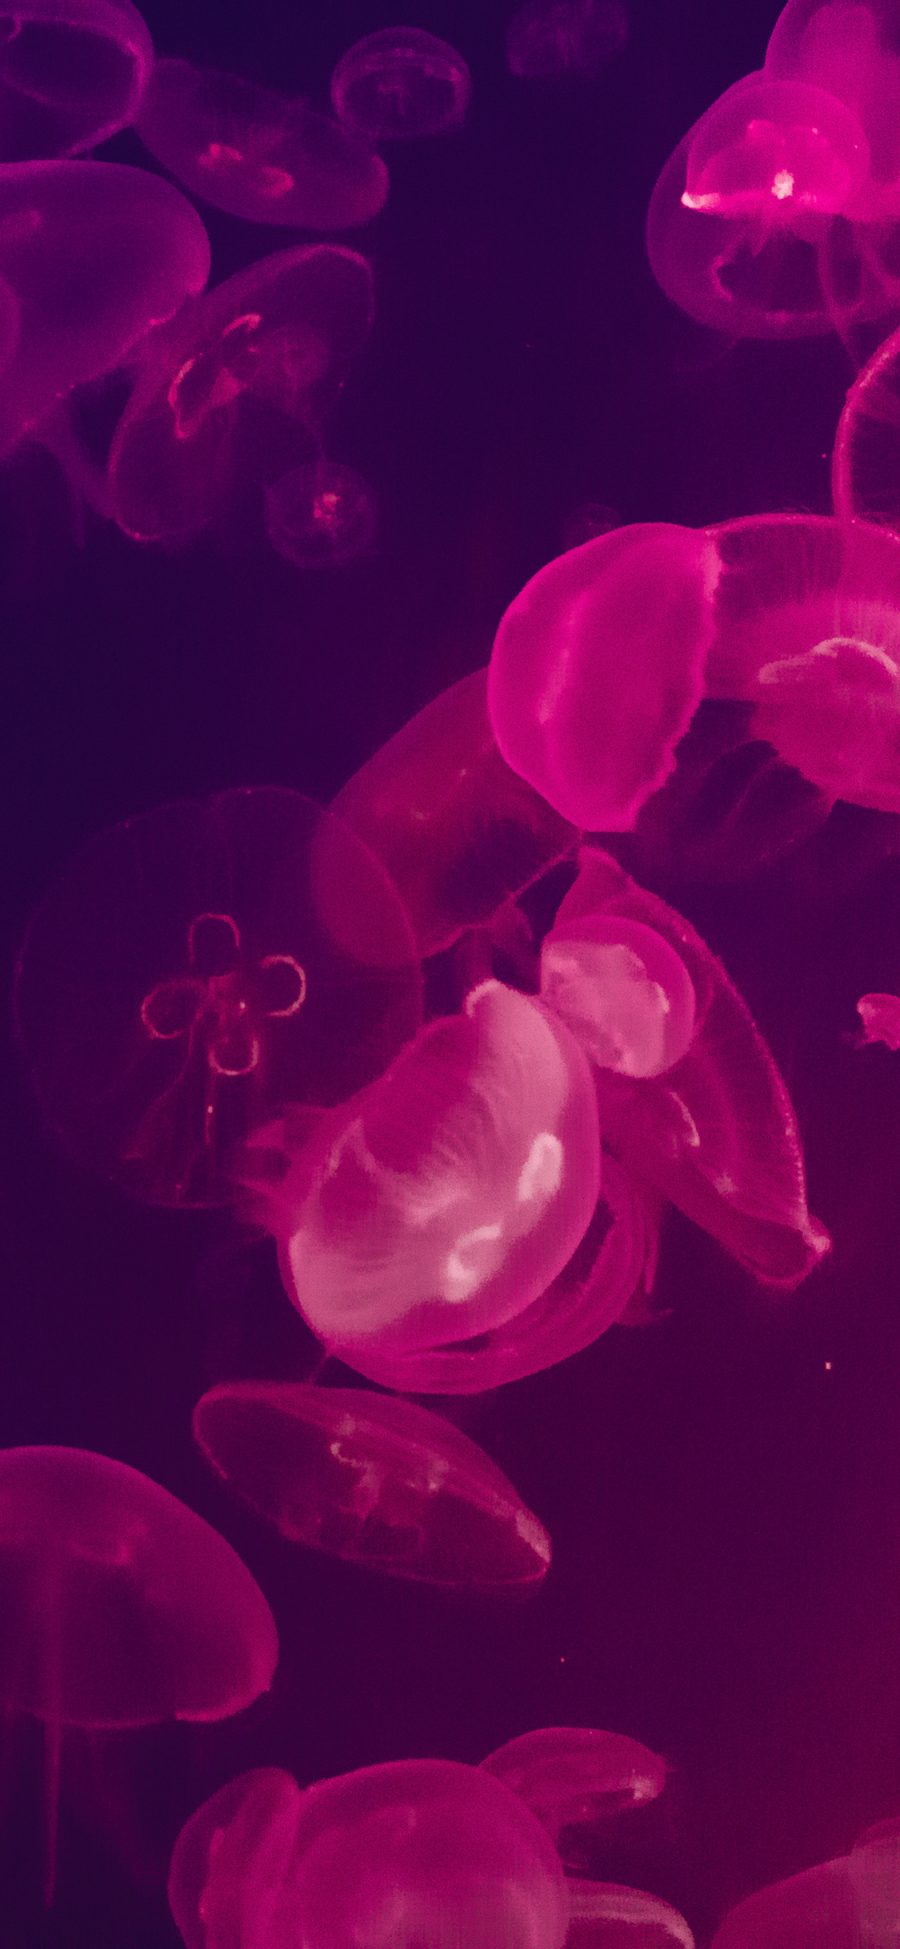 [2436×1125]水母 荧光 海洋生物 浮游 苹果手机壁纸图片